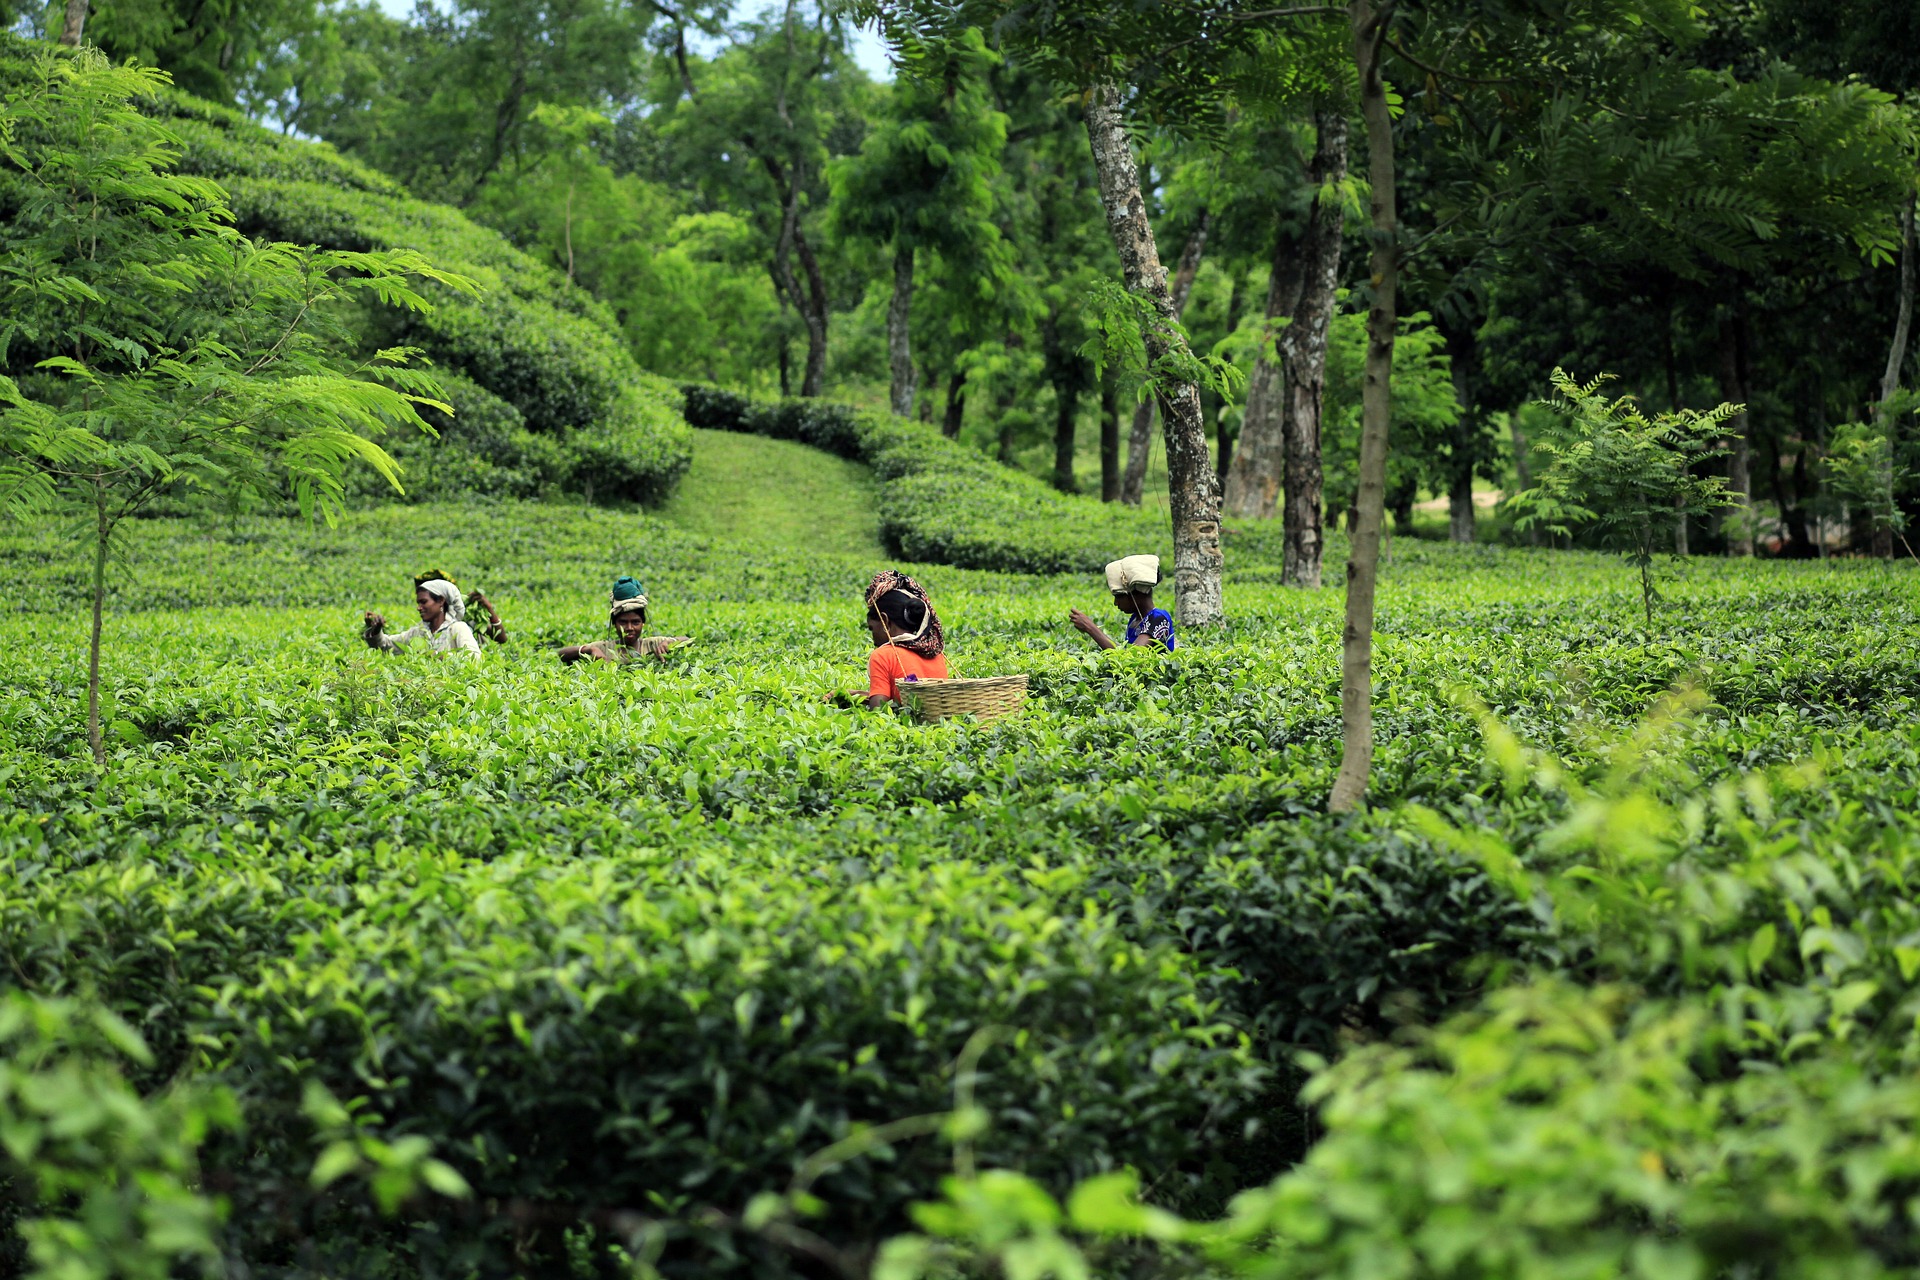 Farmers working in a field of tea plants